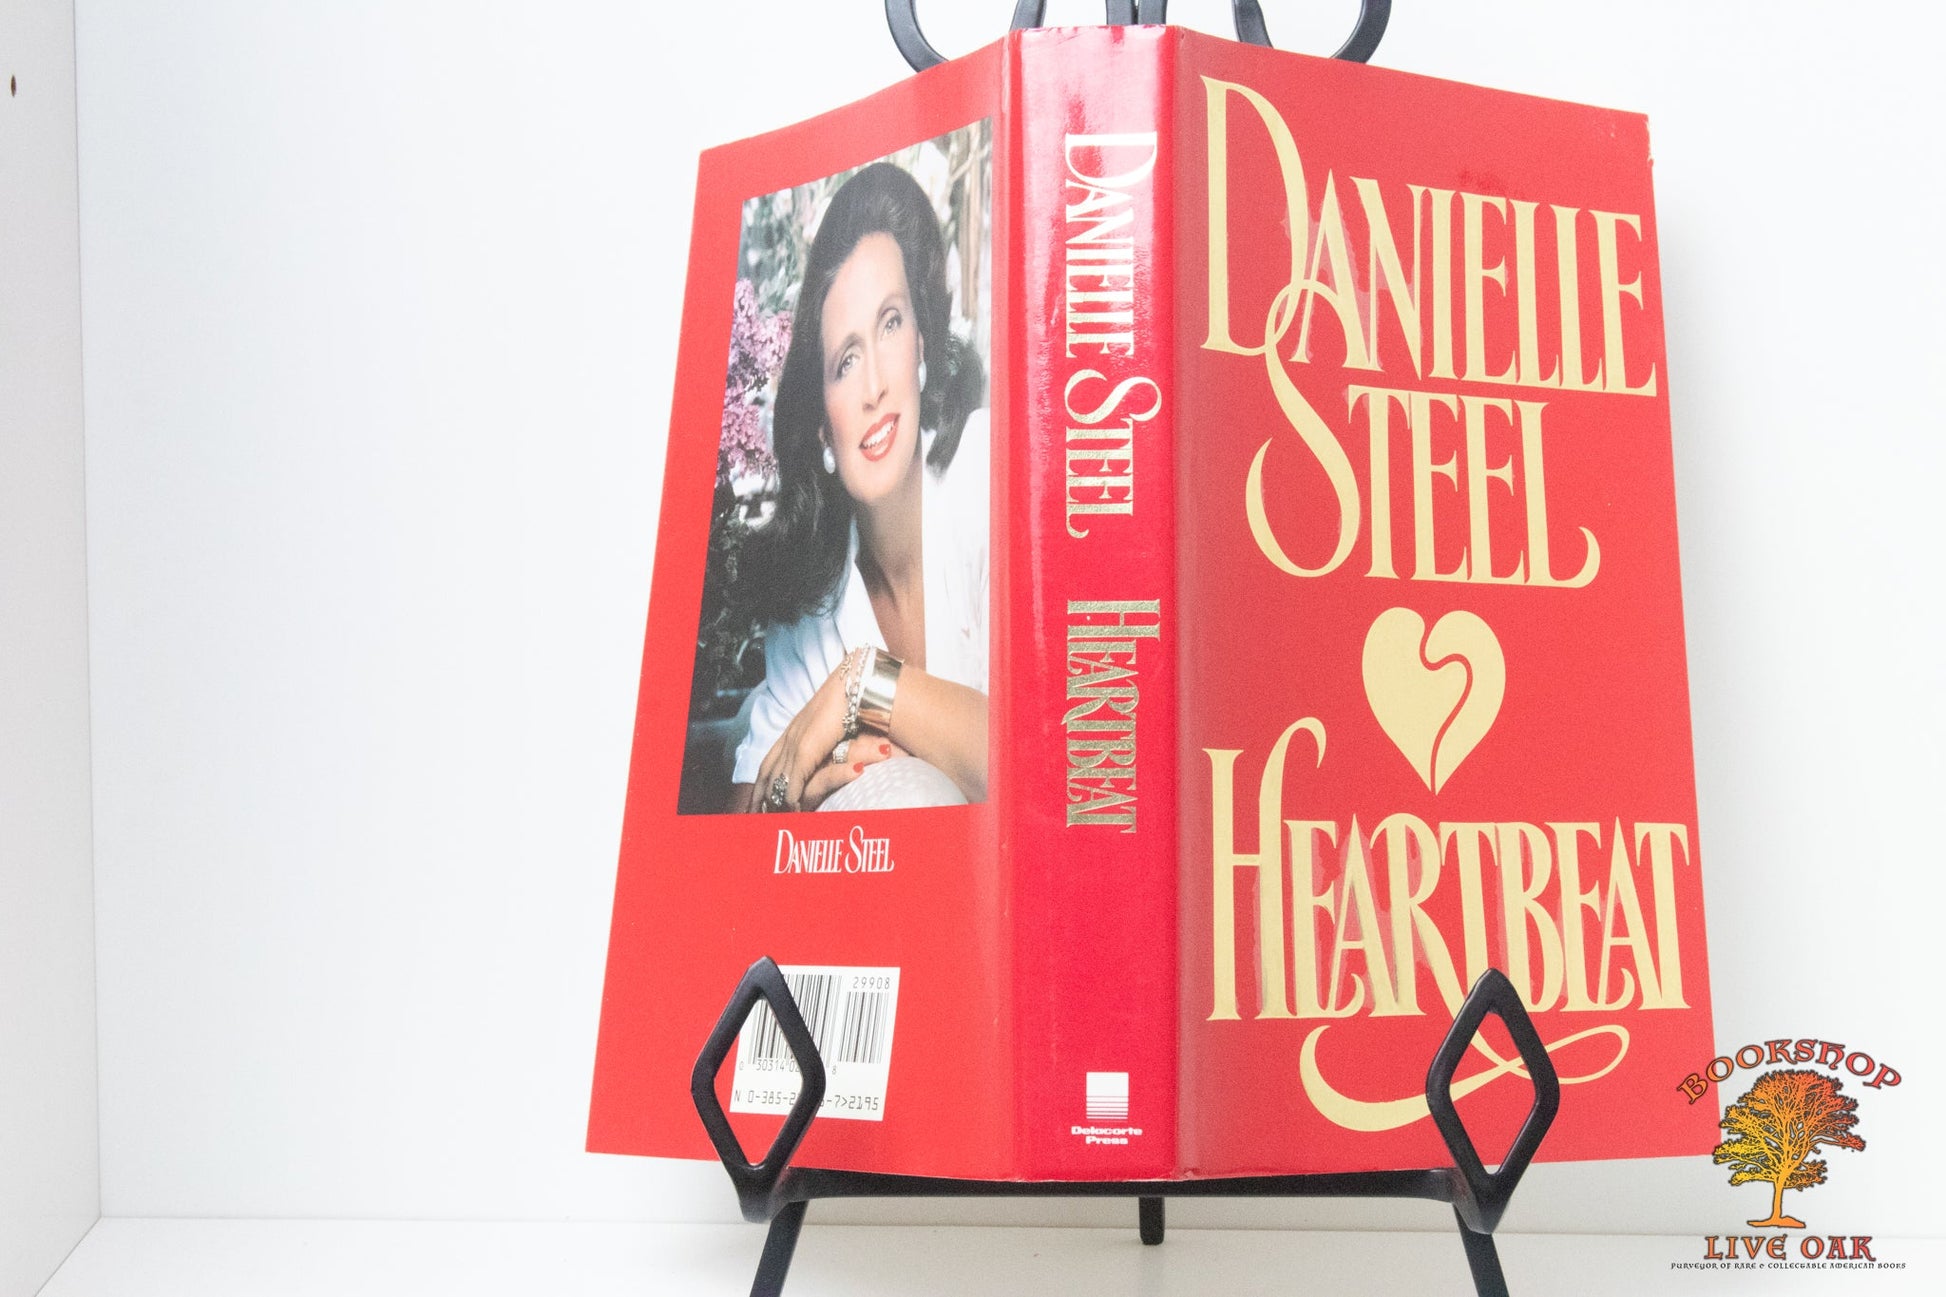 Heartbeat Danielle Steel Hardcover Fiction